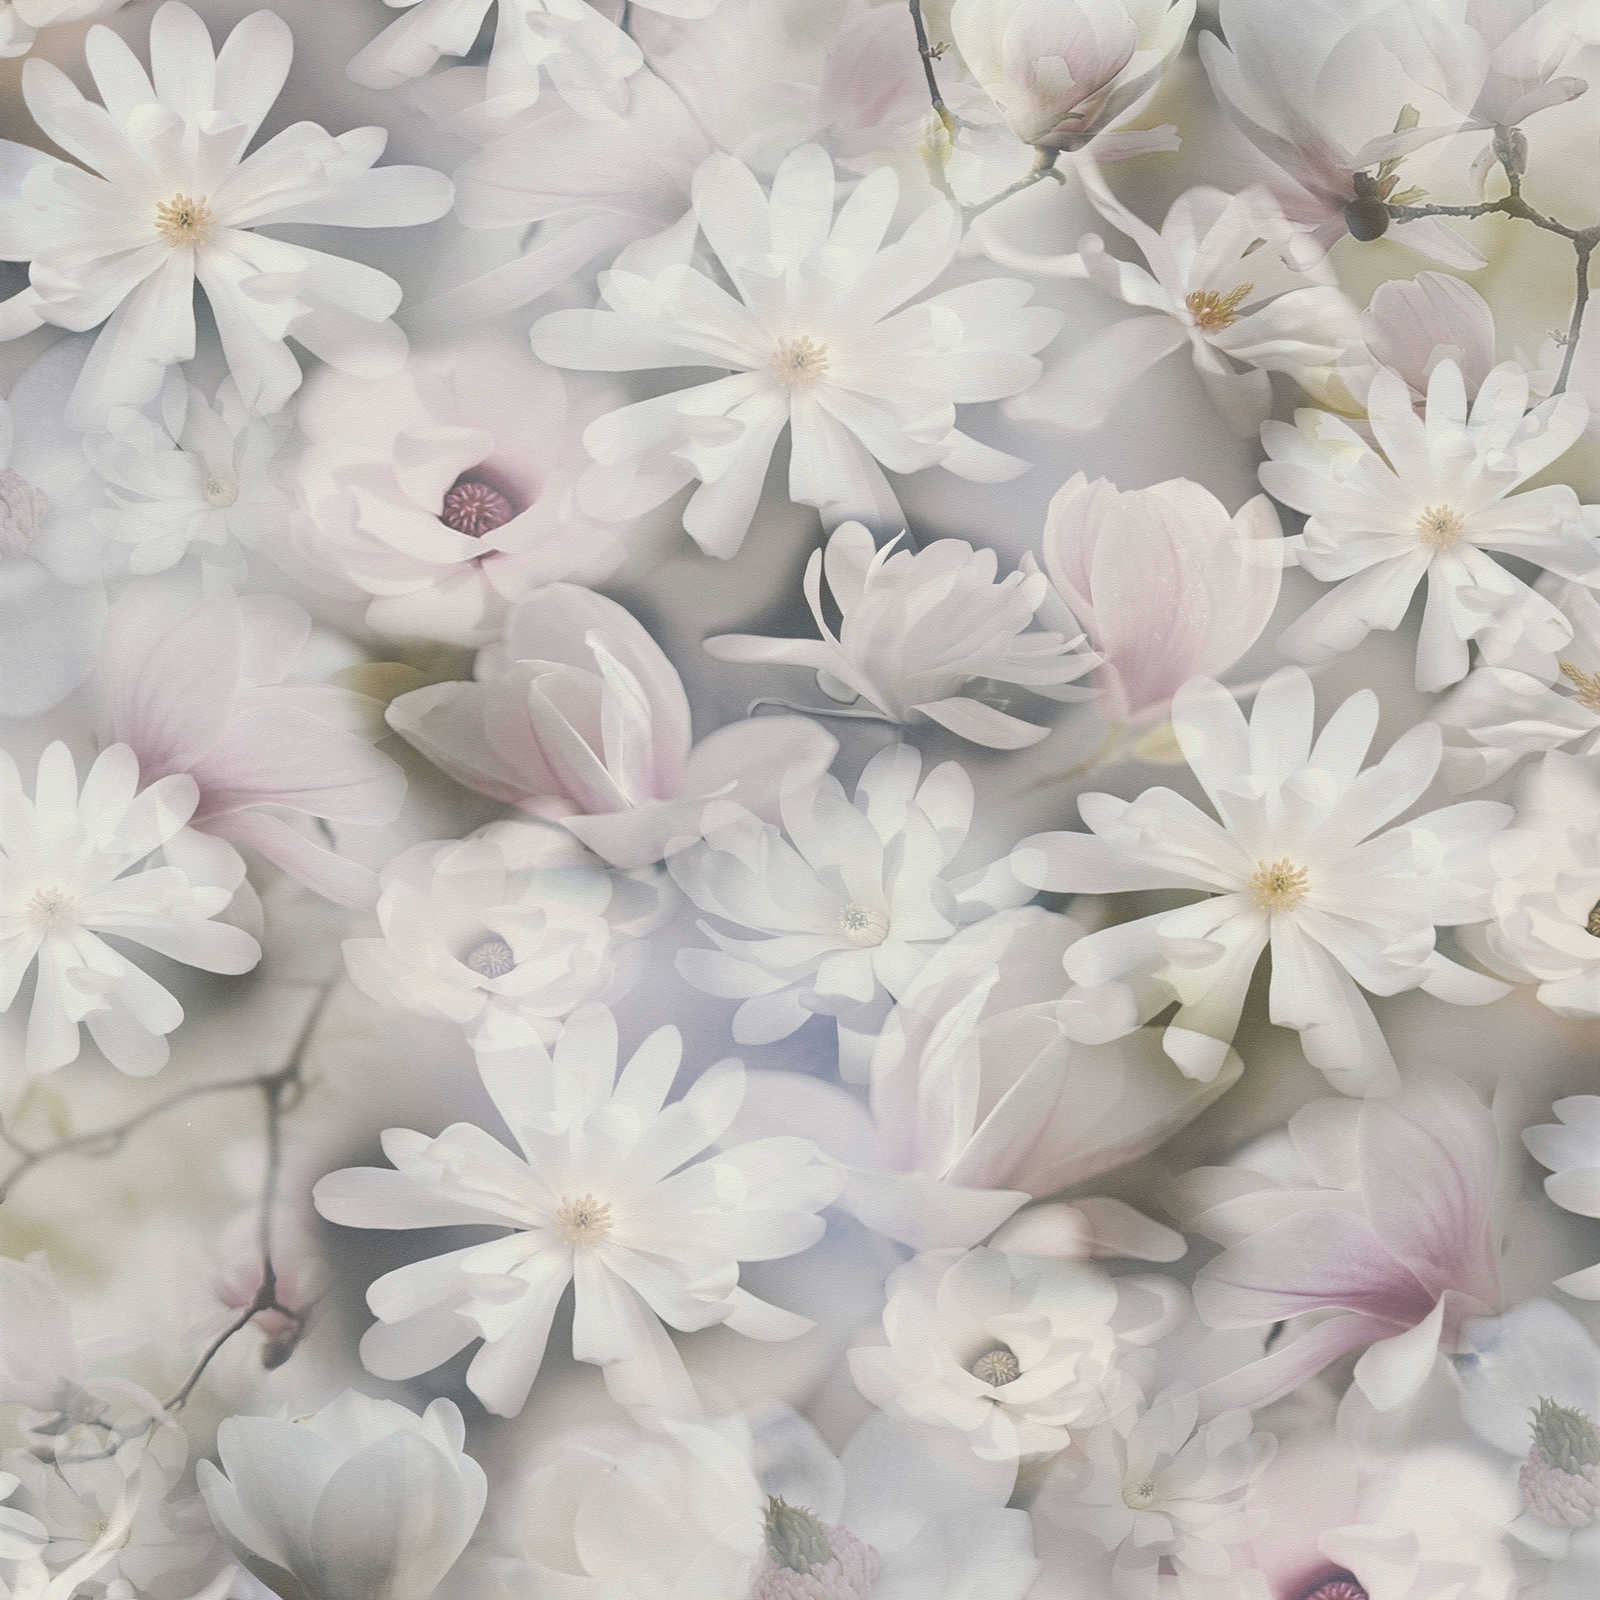 Behang bloemen collage in lichte kleuren - grijs, wit
